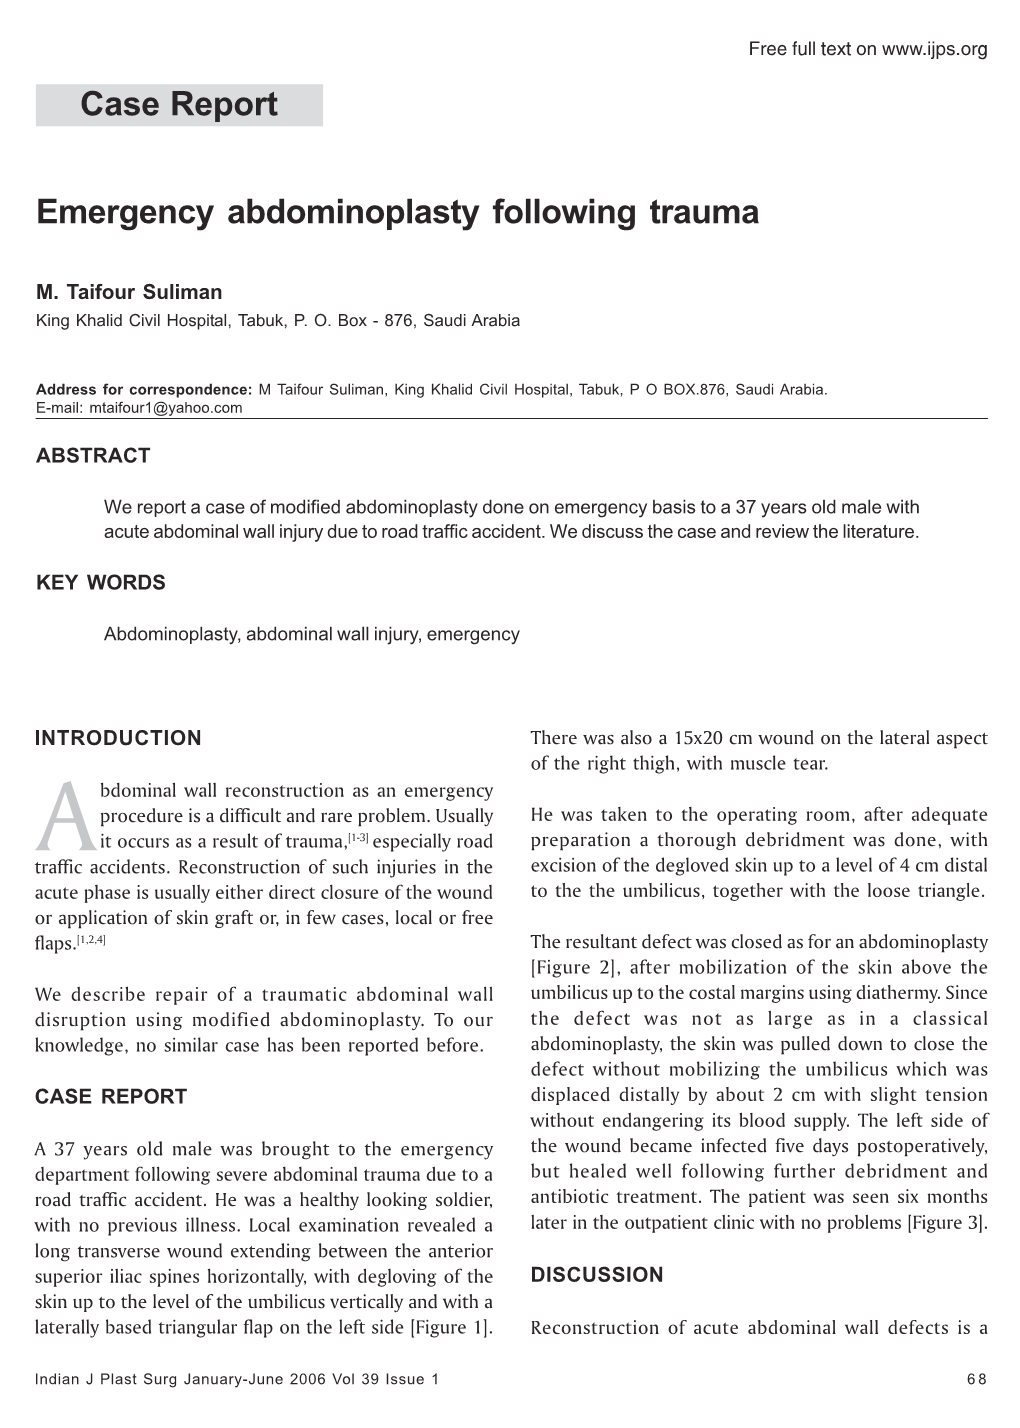 Case Report Emergency Abdominoplasty Following Trauma